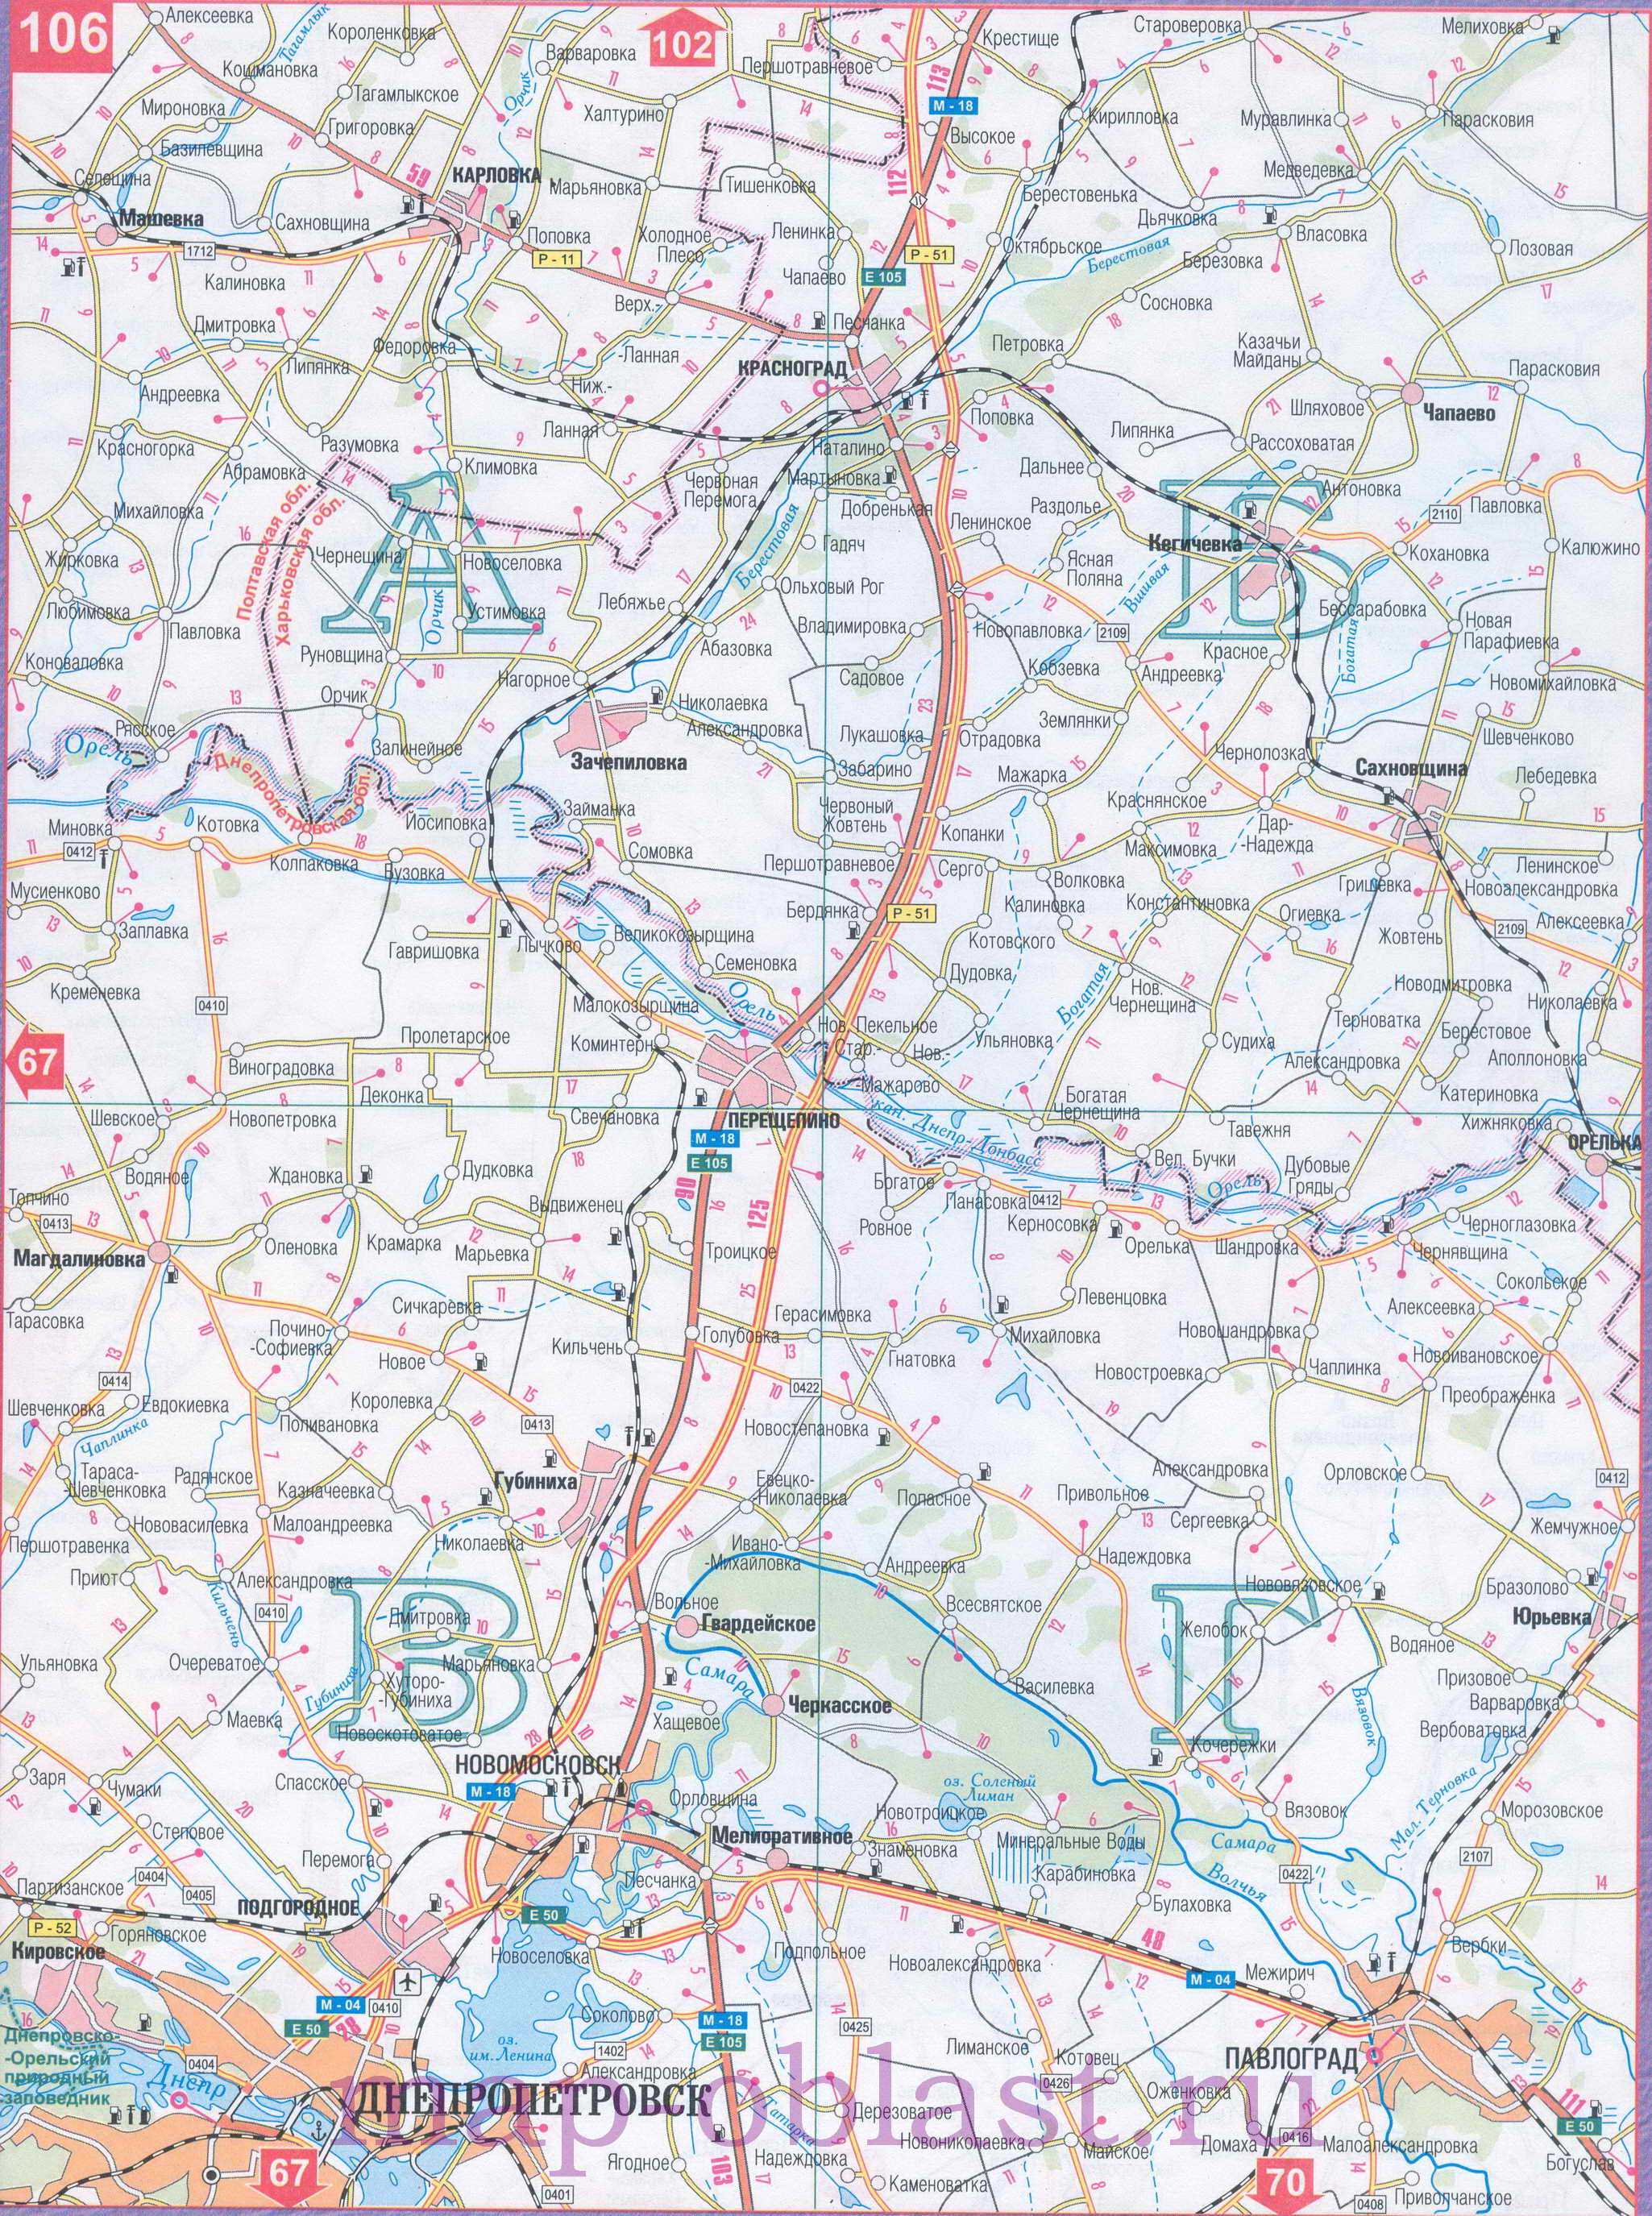 Автомобильная карта Восточной Украины - Харьковская область. Большая подробная карта Харьковской области, A1 - 